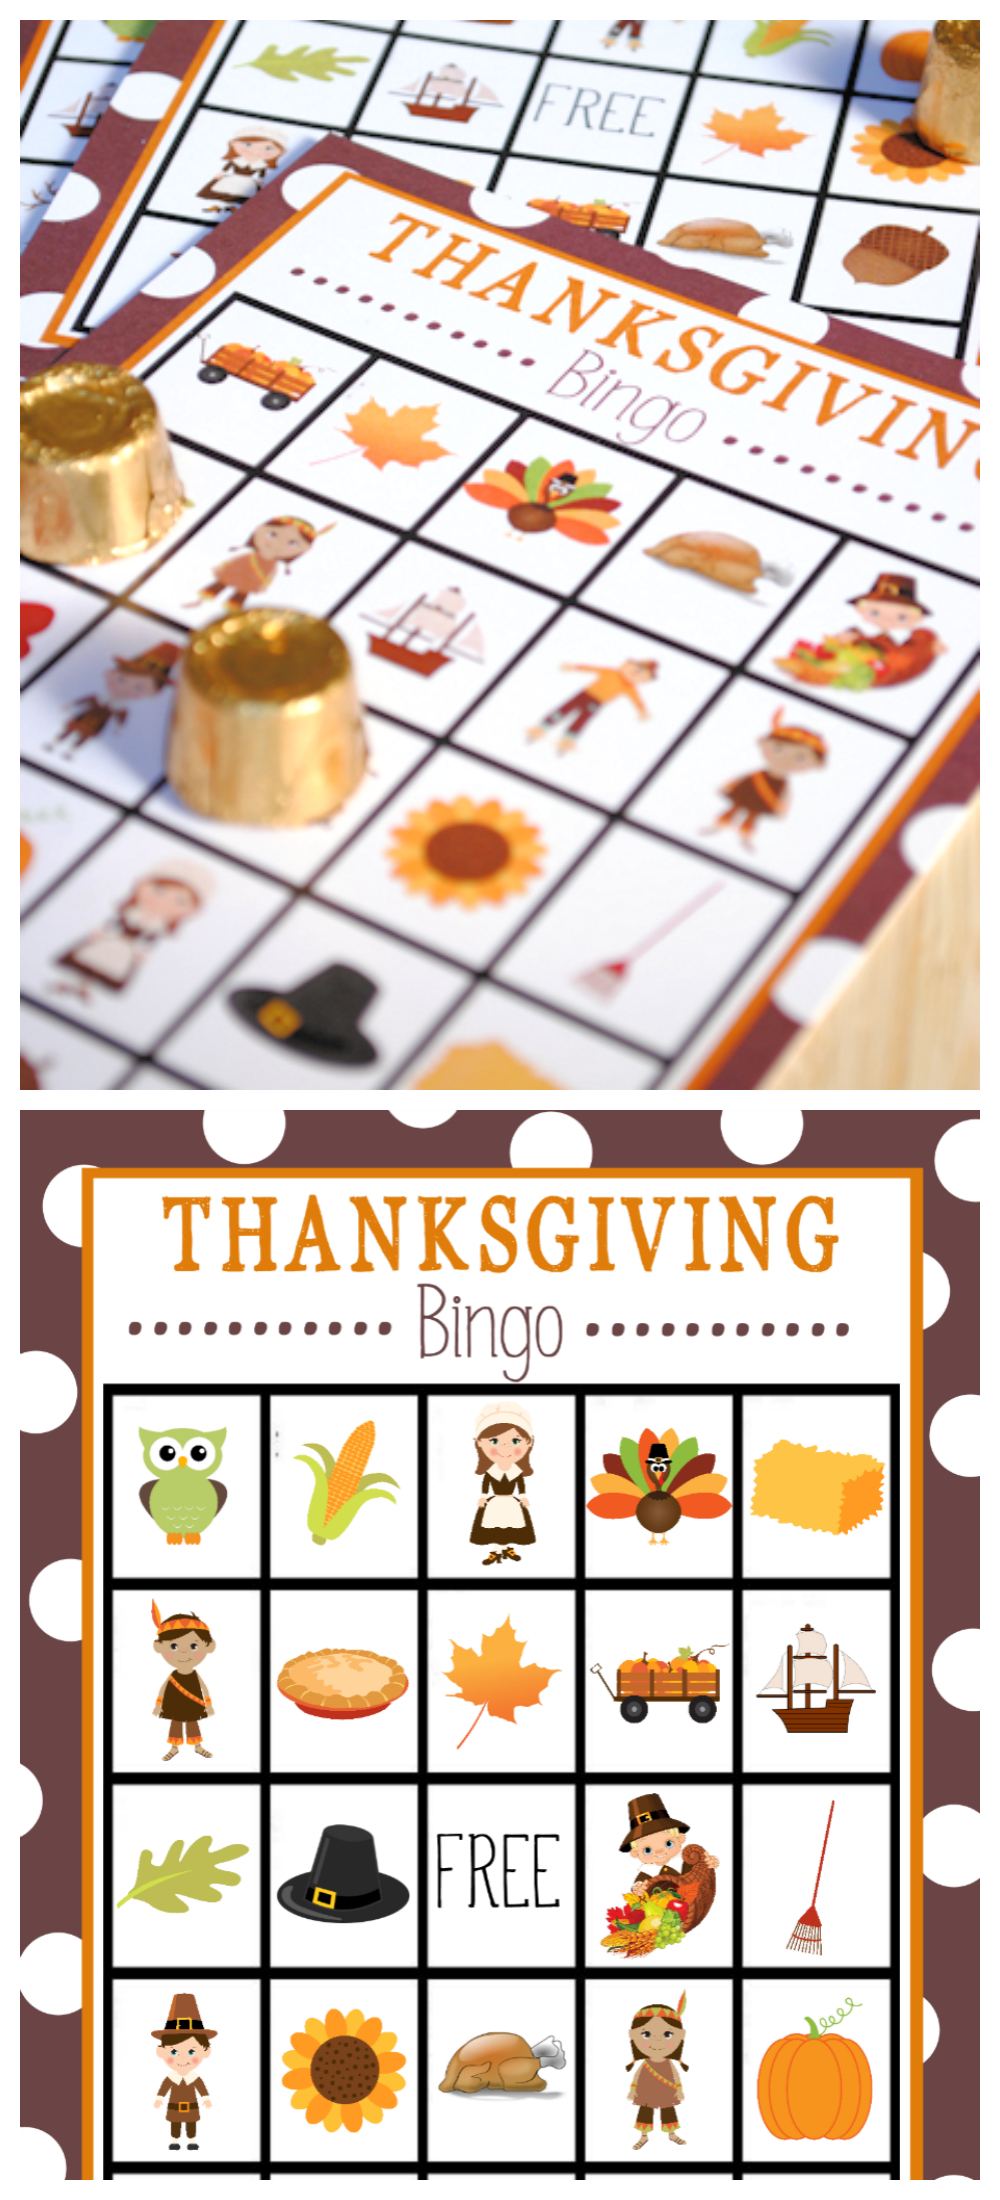 Free Printable Thanksgiving Bingo Game | Thanksgiving | Thanksgiving - Free Printable Thanksgiving Images